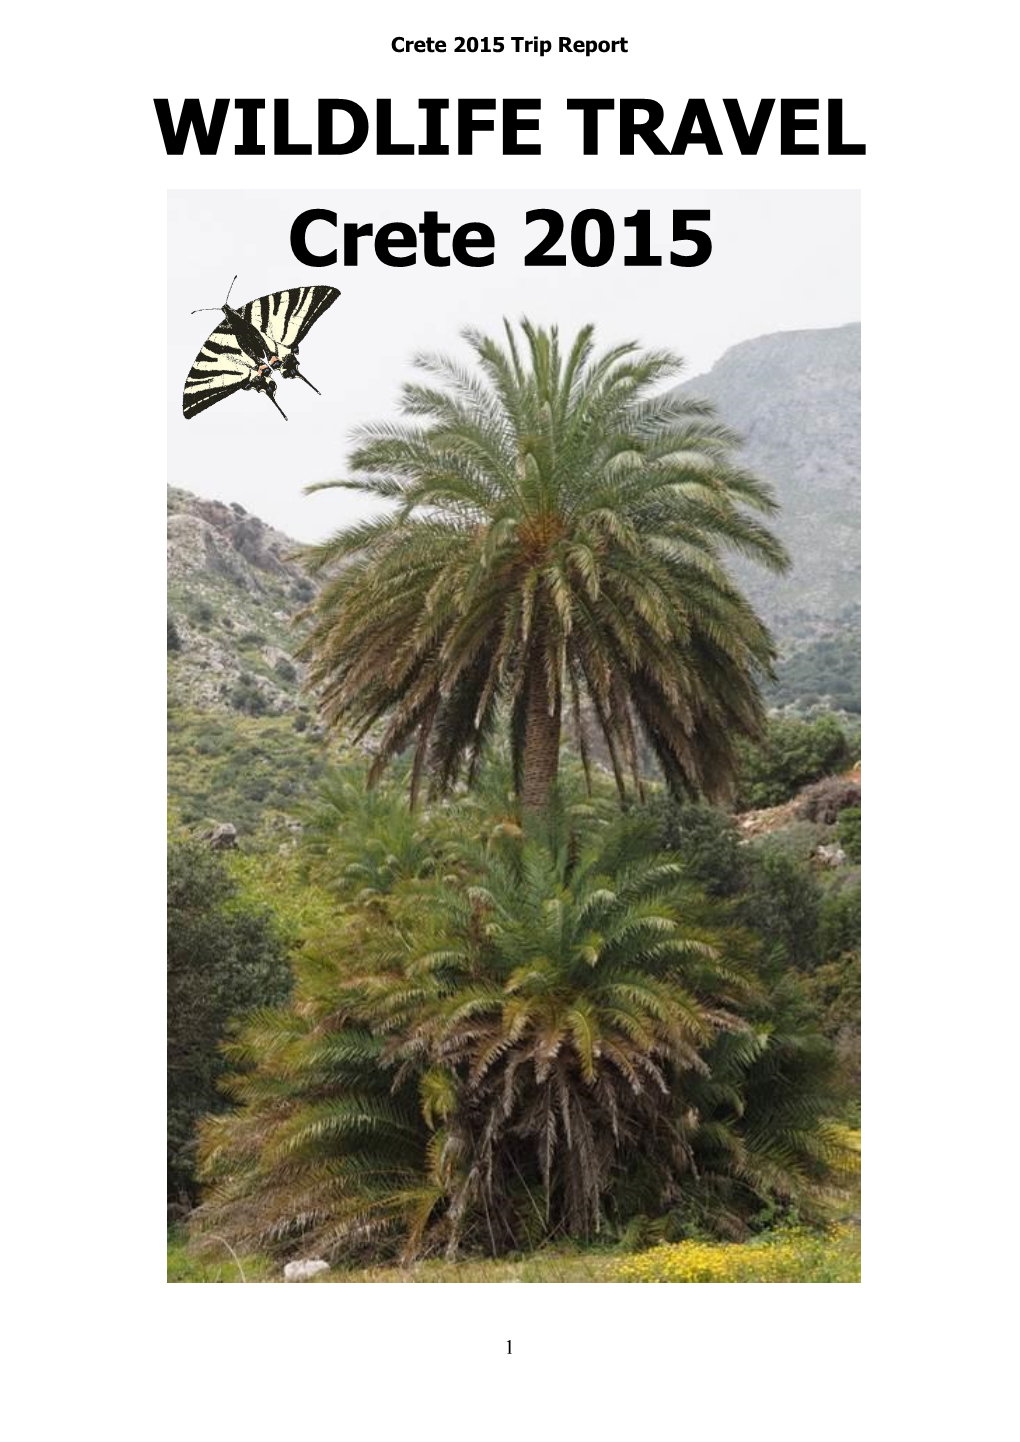 WILDLIFE TRAVEL Crete 2015